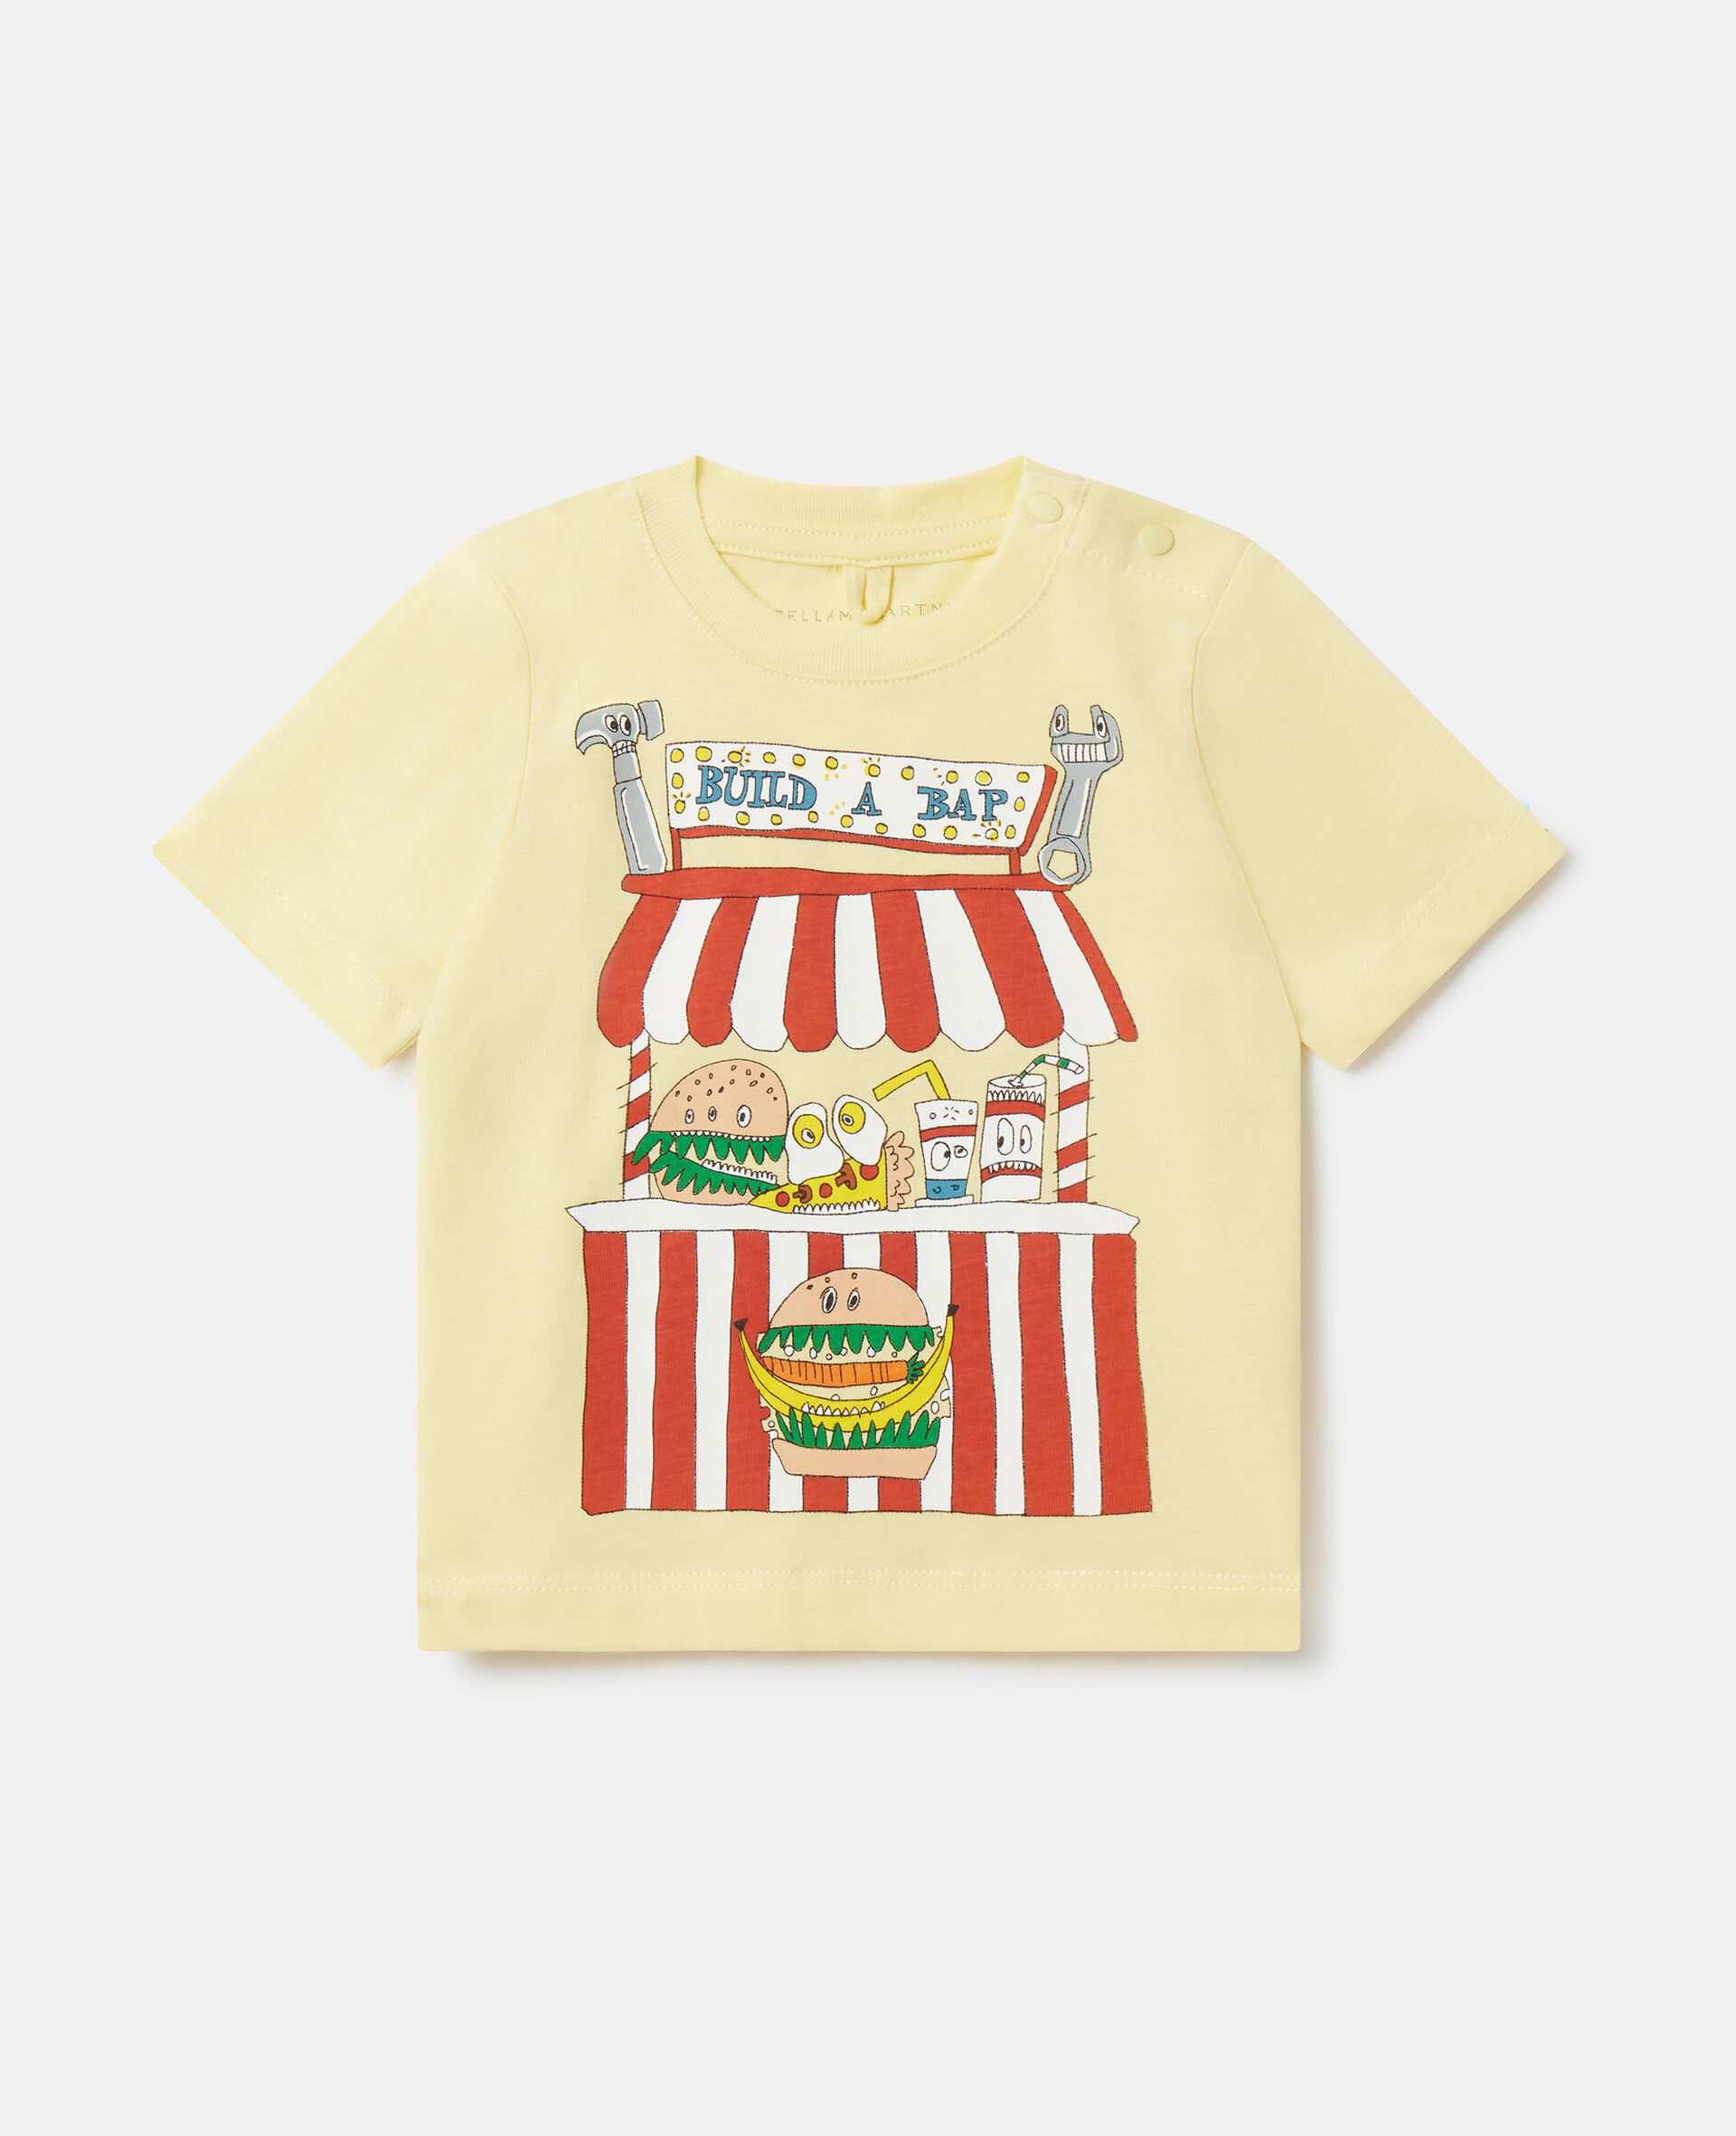 “Build A Bap”摊位 T 恤-Multicolored-medium